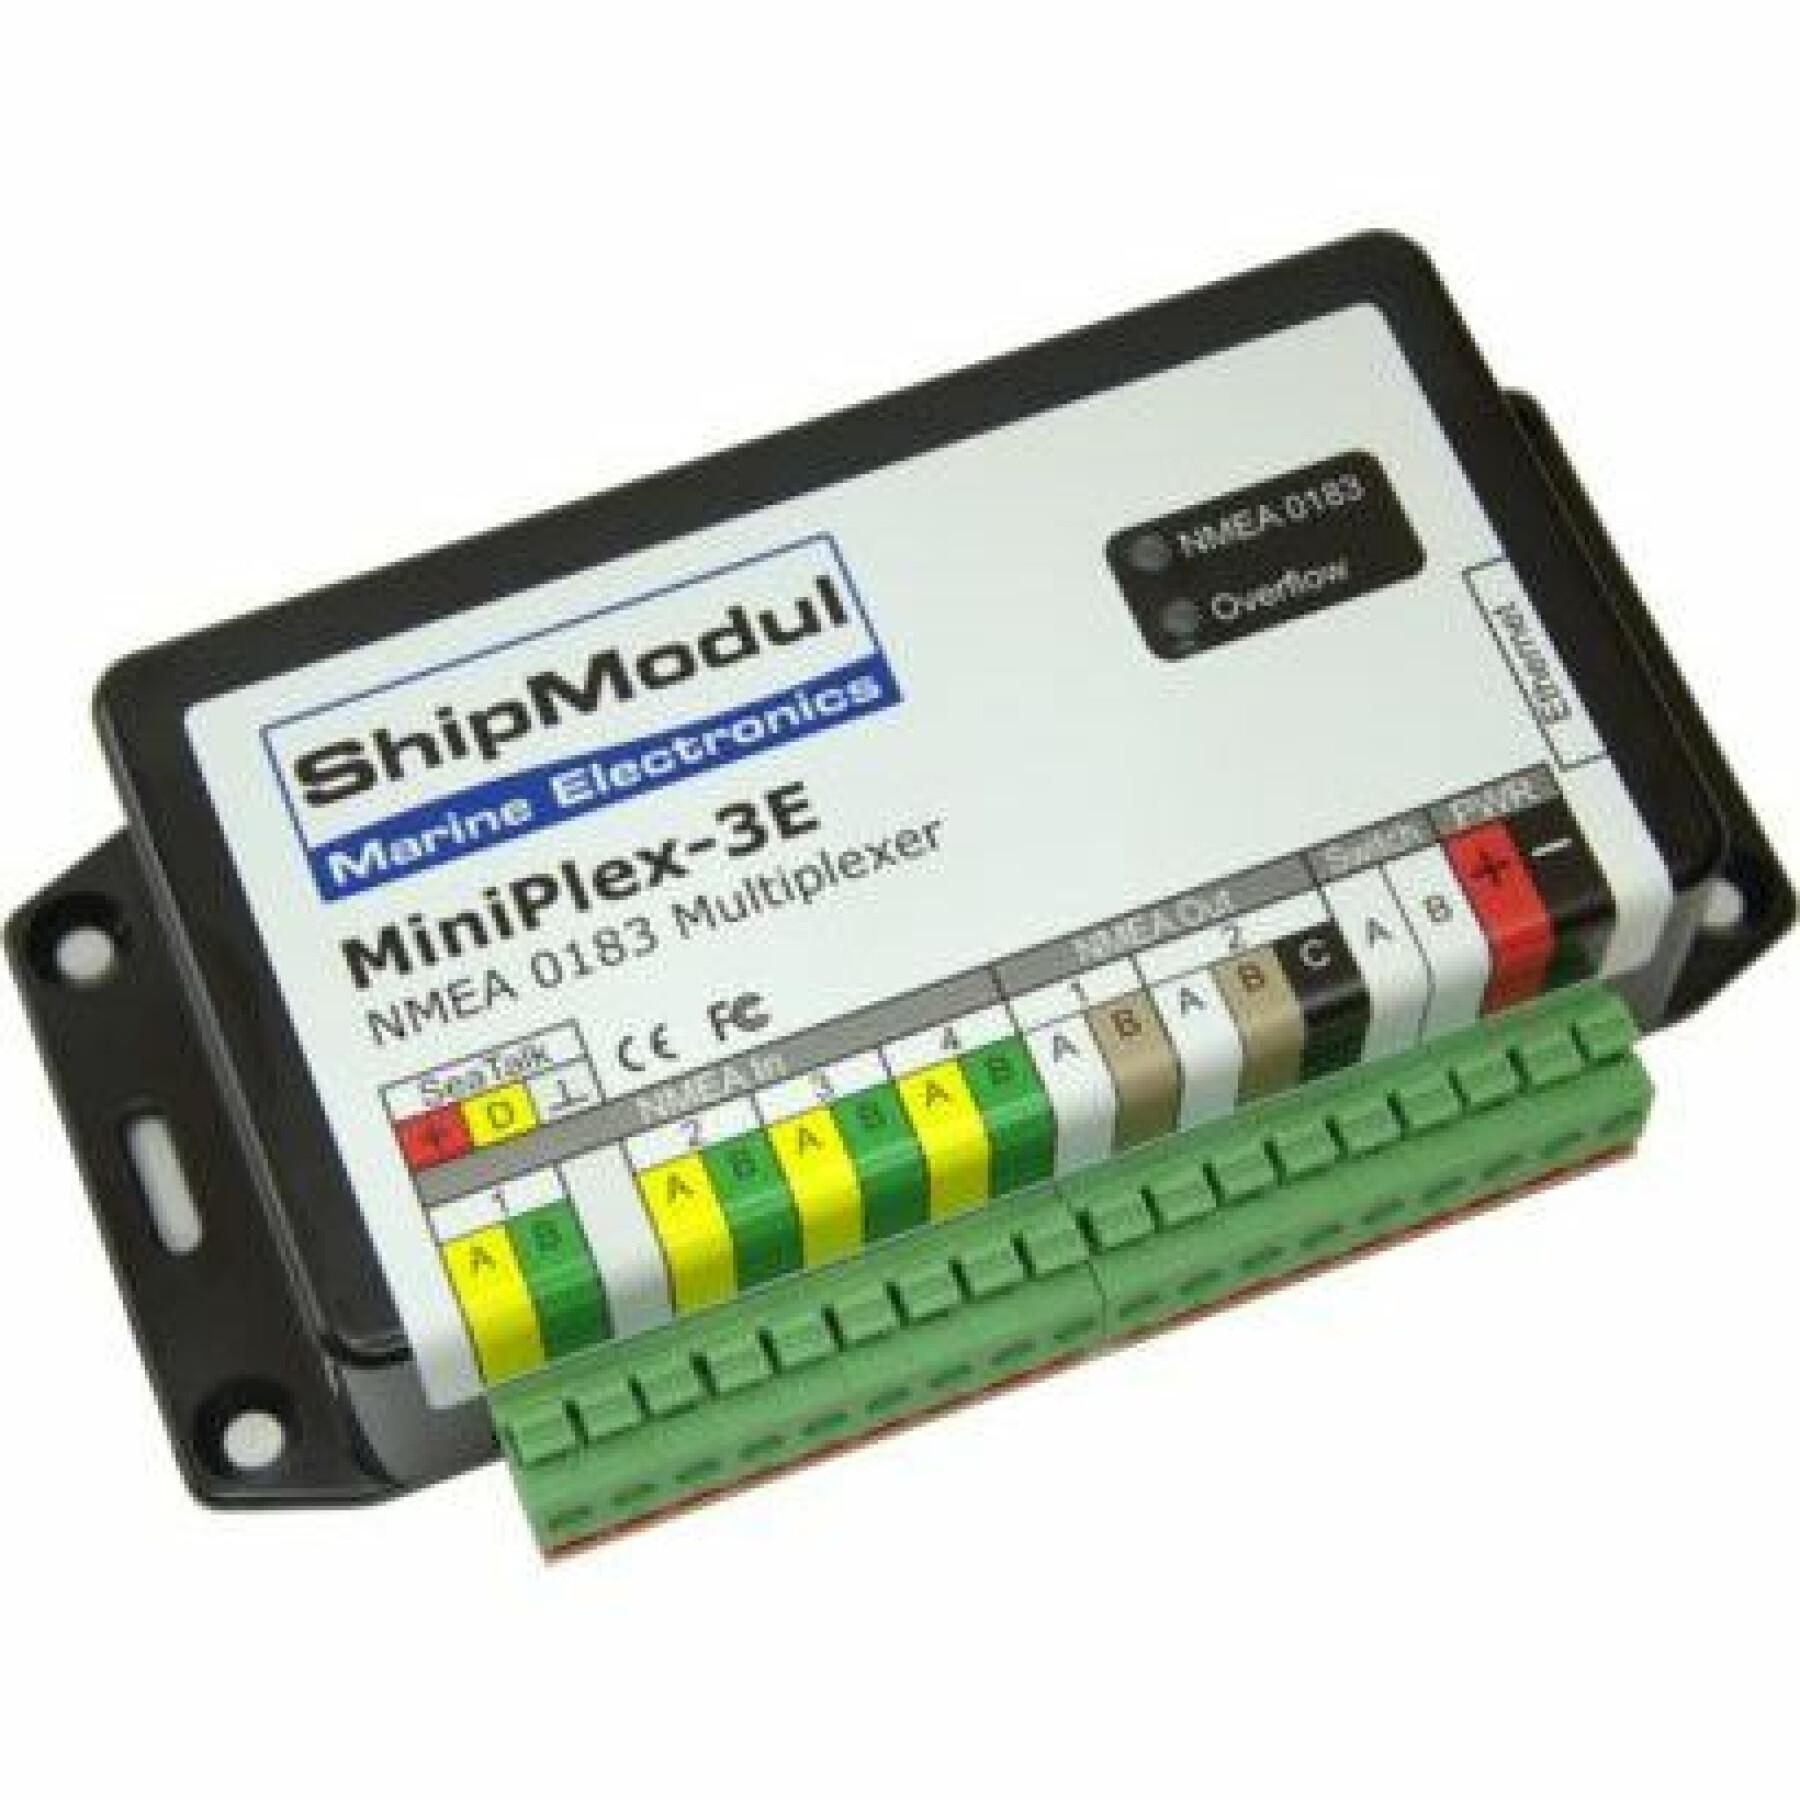 Multiplexor versión Ethernet ShipModul Miniplex-3E